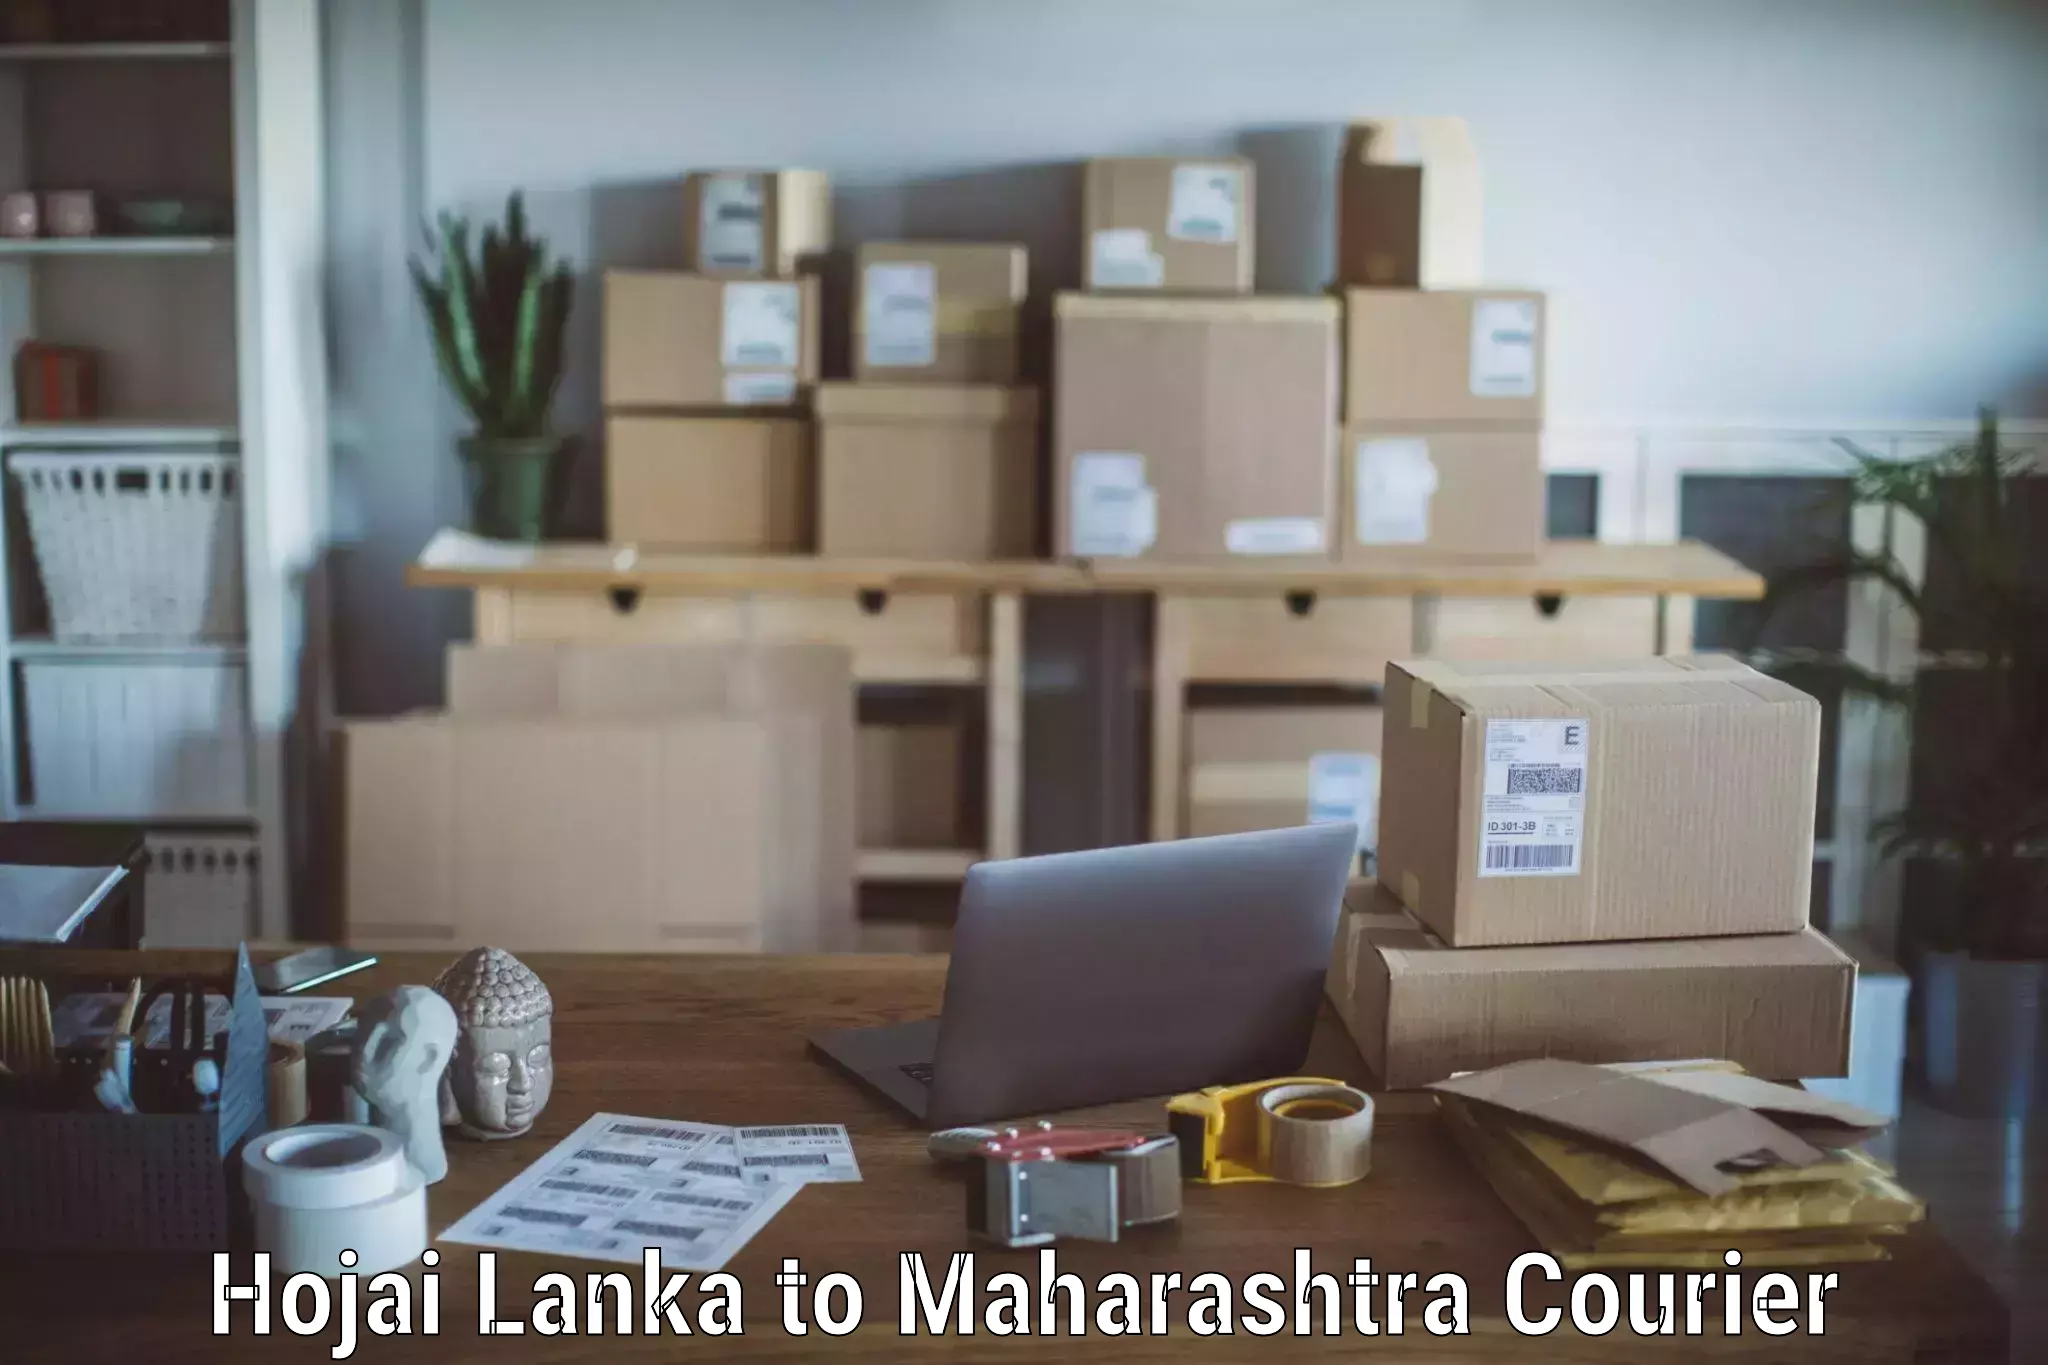 Furniture moving experts Hojai Lanka to IIIT Pune